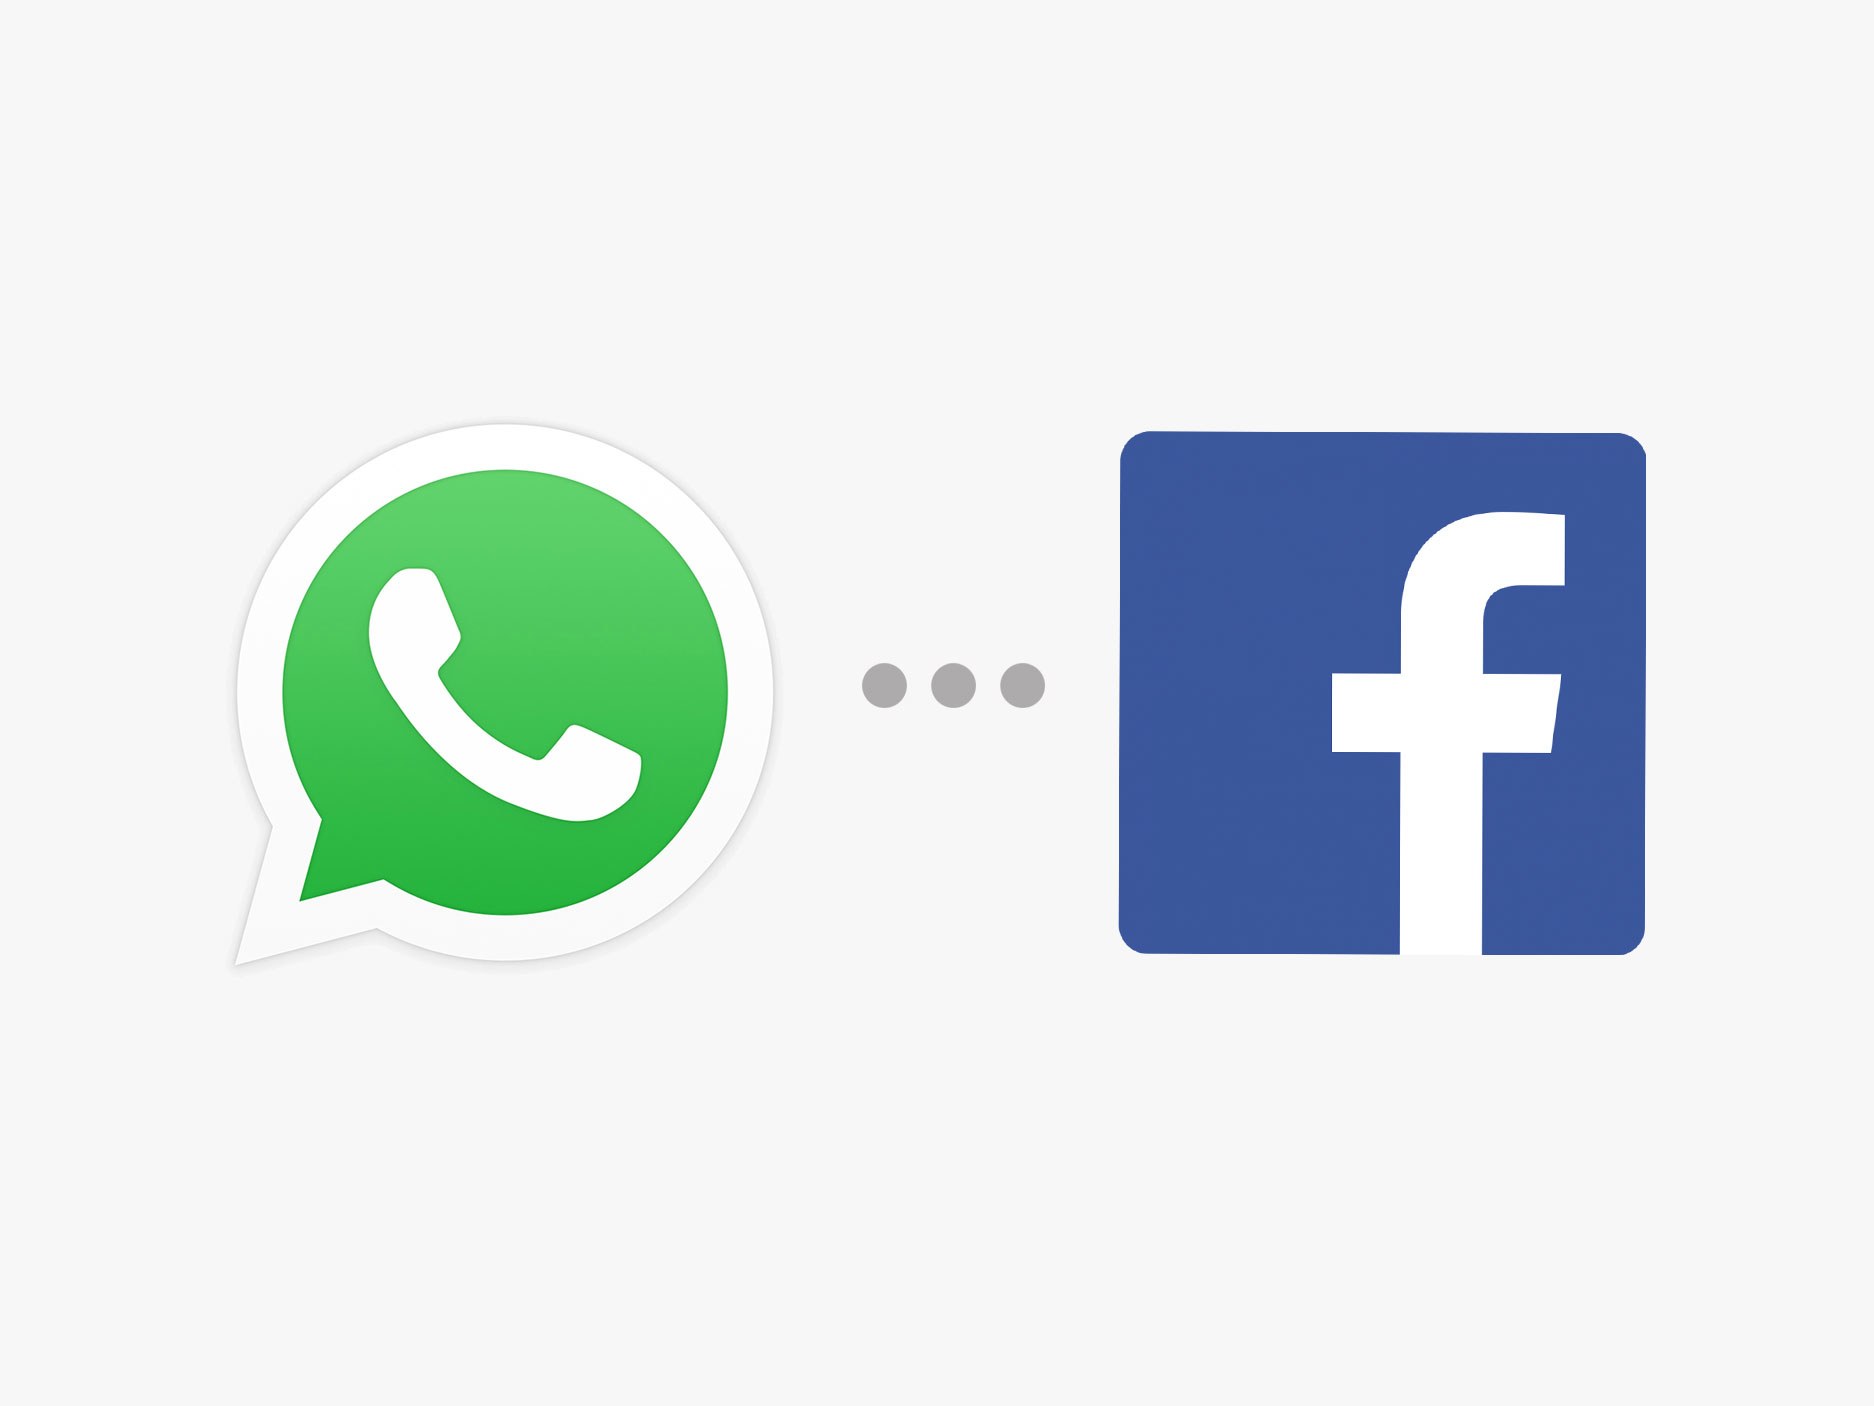 Korisnici za komunikaciju sve češće koriste WhatsApp umjesto Facebook